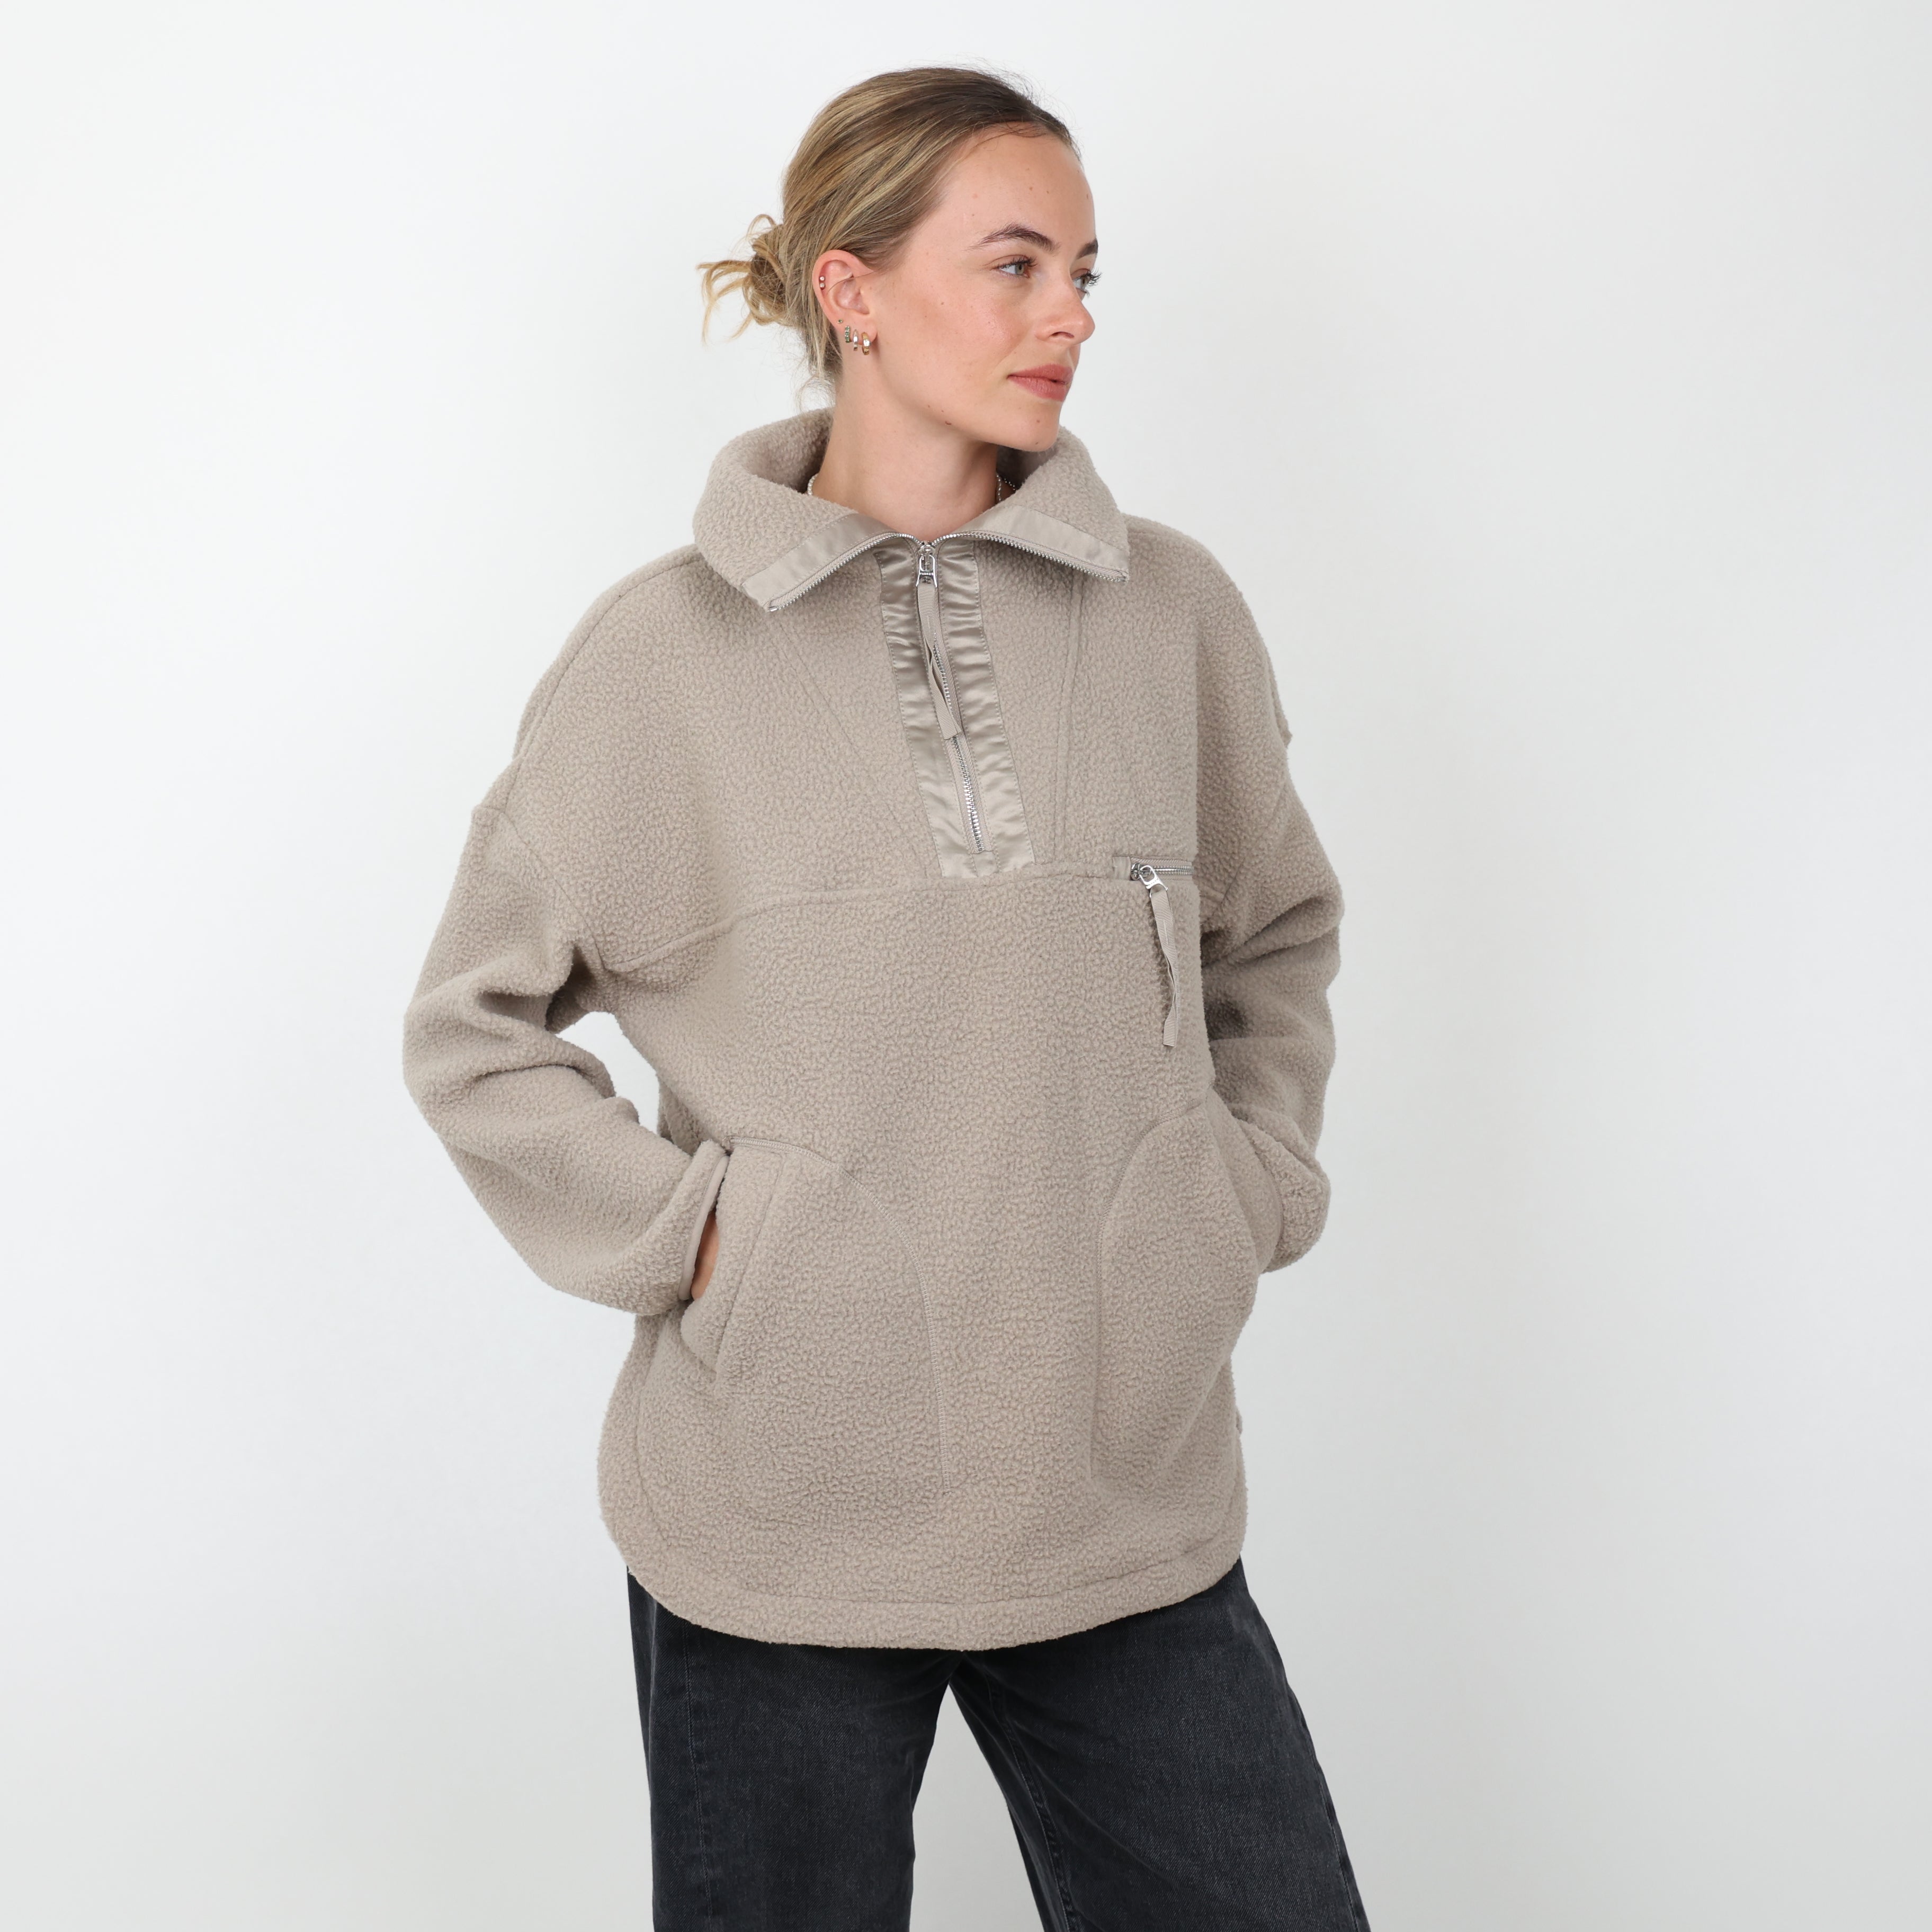 Sweatshirt, UK Size 12